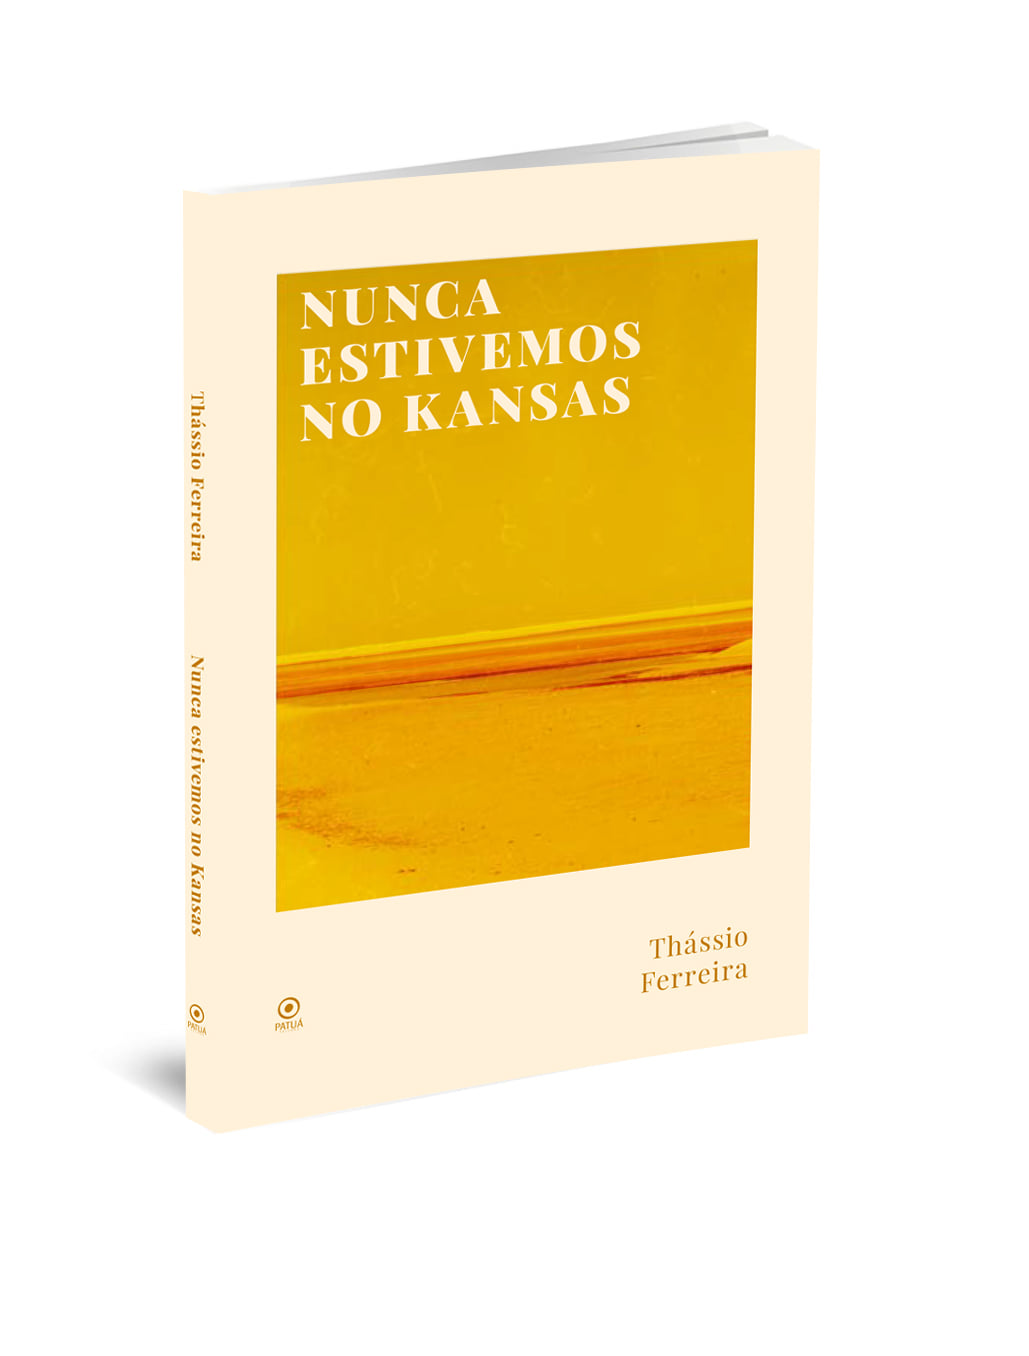 Thassio Ferreira - Livro de contos 'Nunca estivemos em kansas' rompe com as relações ao corpo e desejo, as balizas do binarismo | Fernando Andrade